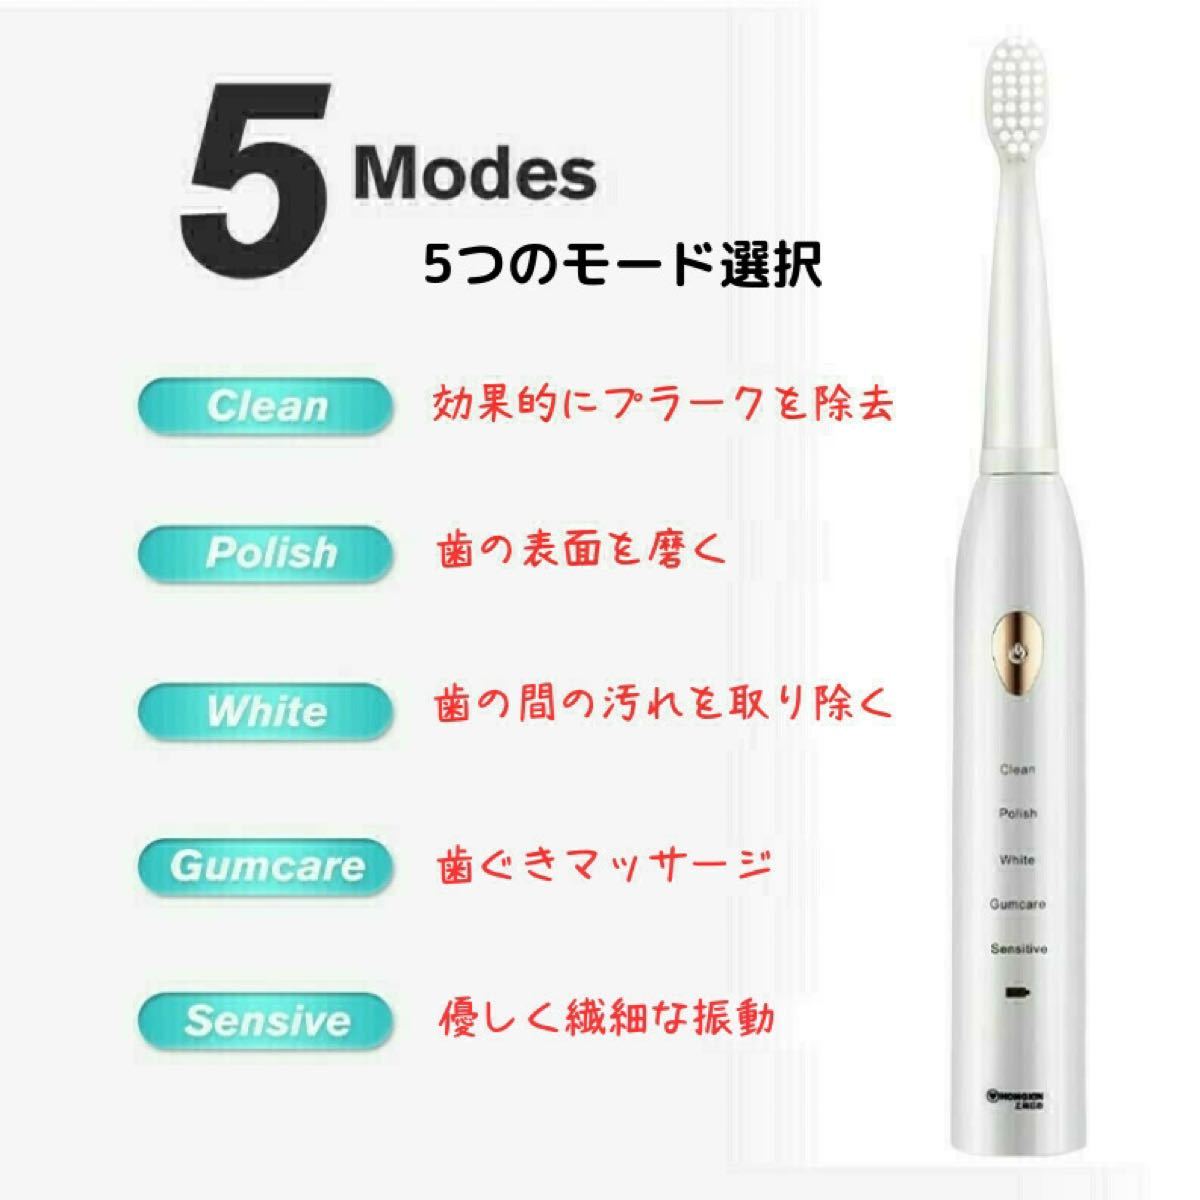 電動歯ブラシ セット ホワイト 5つのモード切替 ブラシヘッド4本付き 替えブラシ 防水  USB充電 歯ブラシ 高速振動 